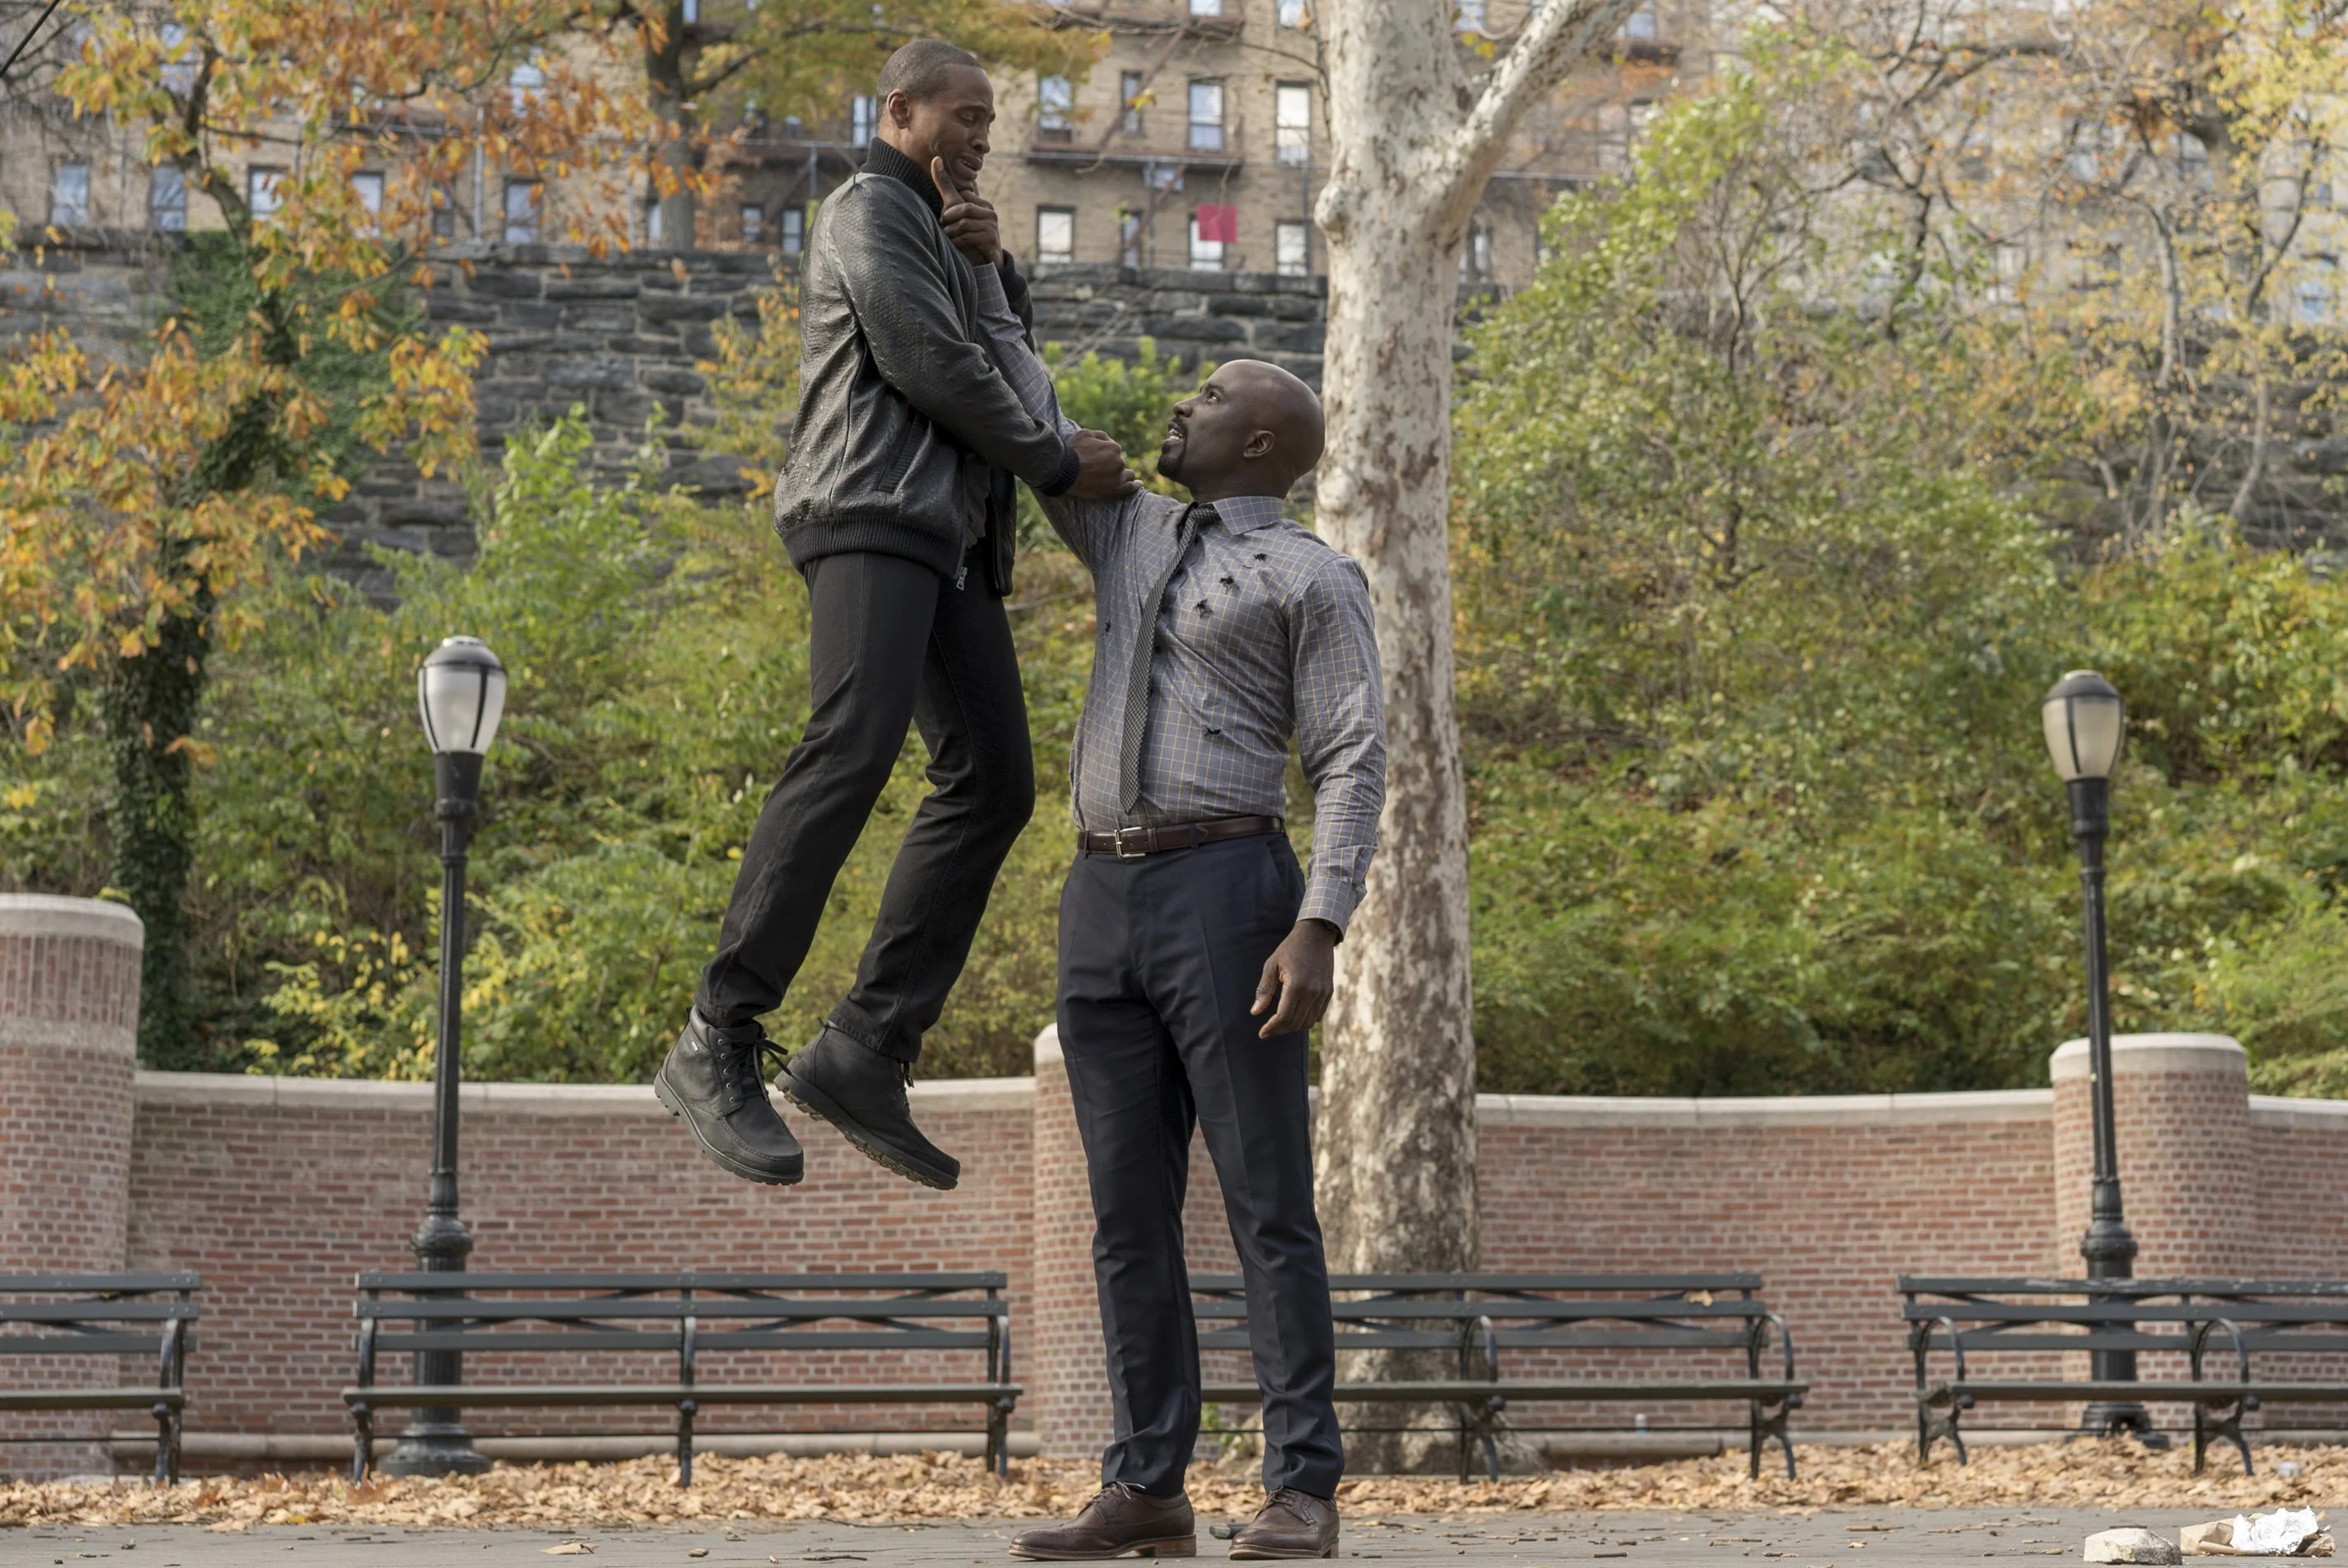 30 сентября Netflix выложила все 13 эпизодов своего нового сериала линейке «Защитников» – «Люка Кейджа», посвященного одному из наиболее знаковых чернокожих супергероев Marvel, обладающему сверхпрочной кожей, быстрым исцелением и огромной физической силой. 